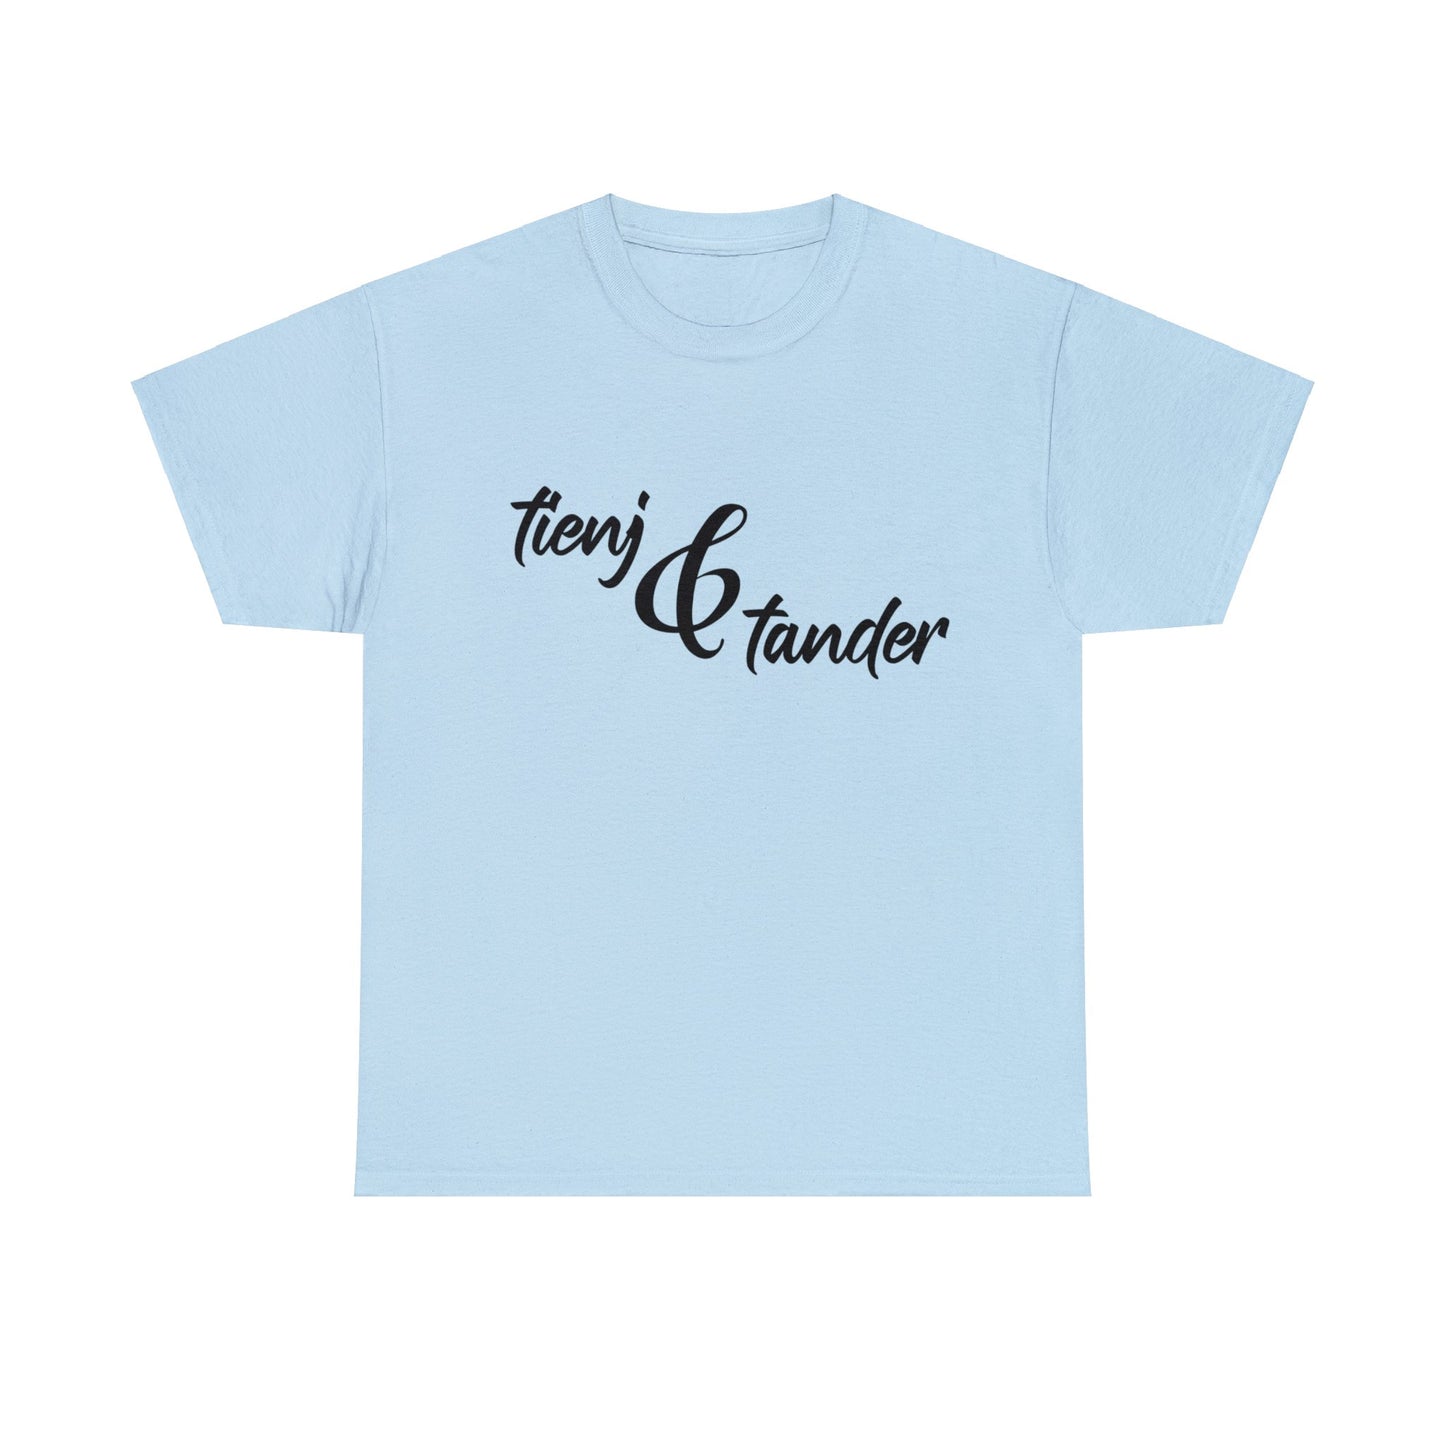 Int Oilsjters - Tshirt - Tienj & Tander